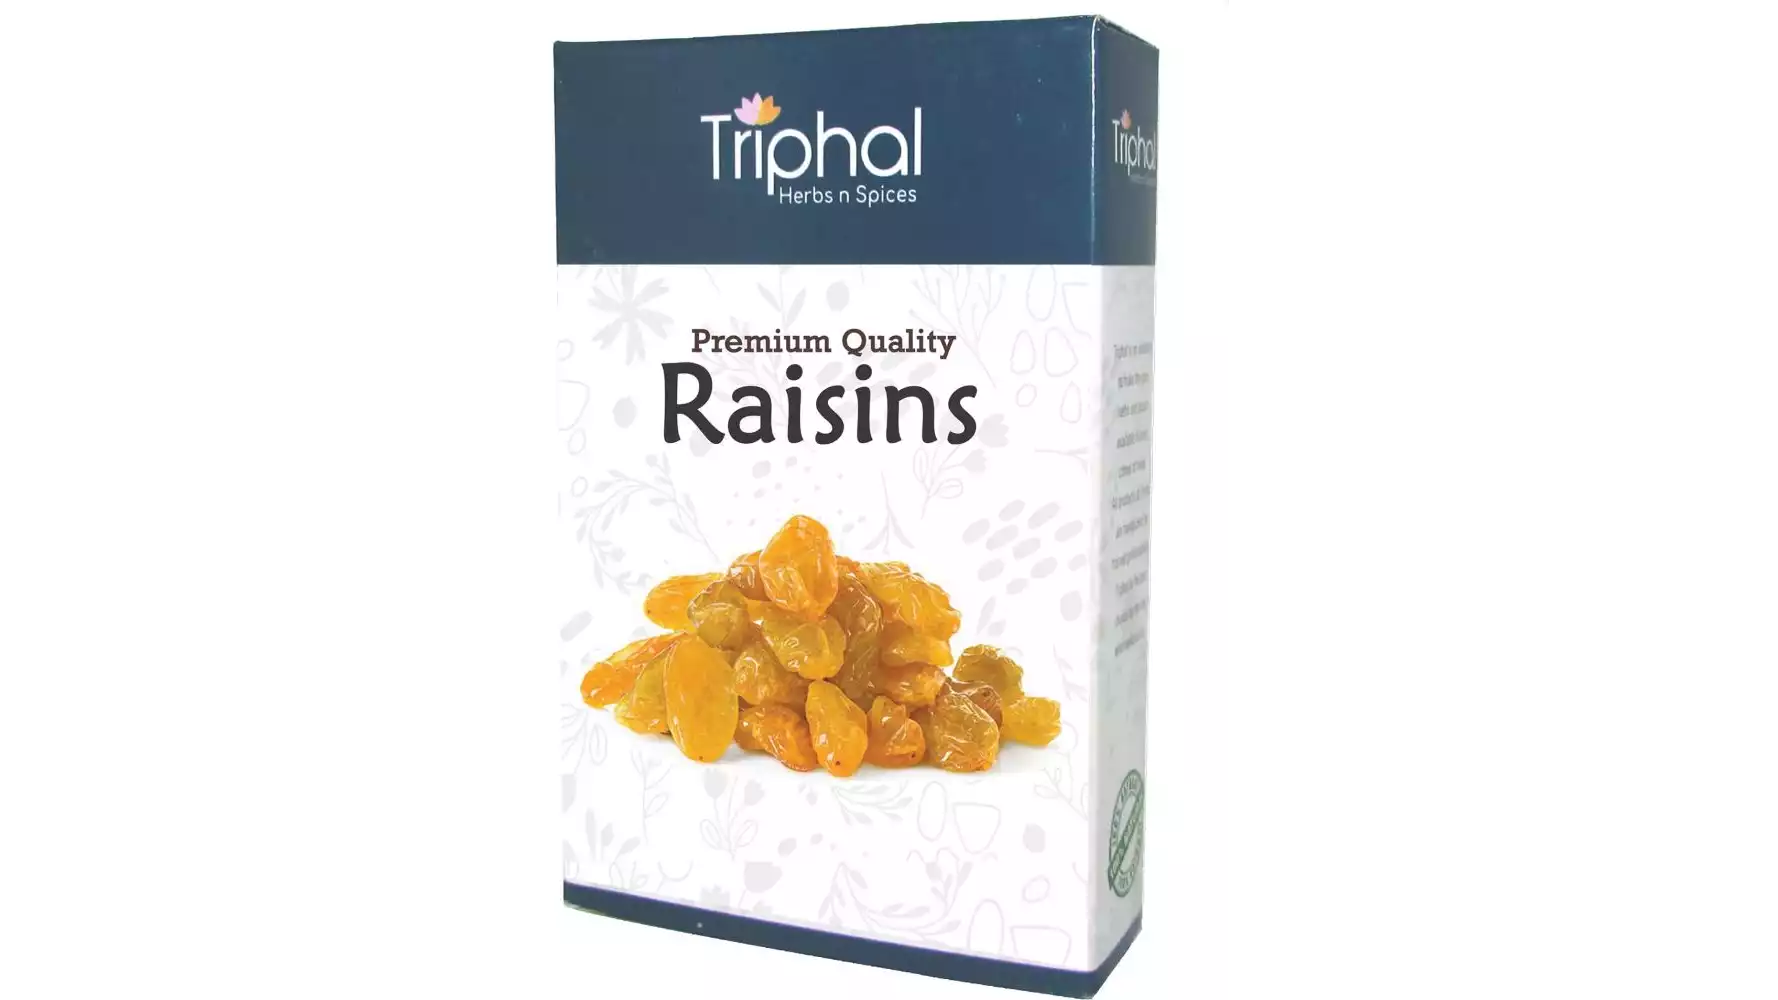 Triphal Premium Quality Raisins (200g)